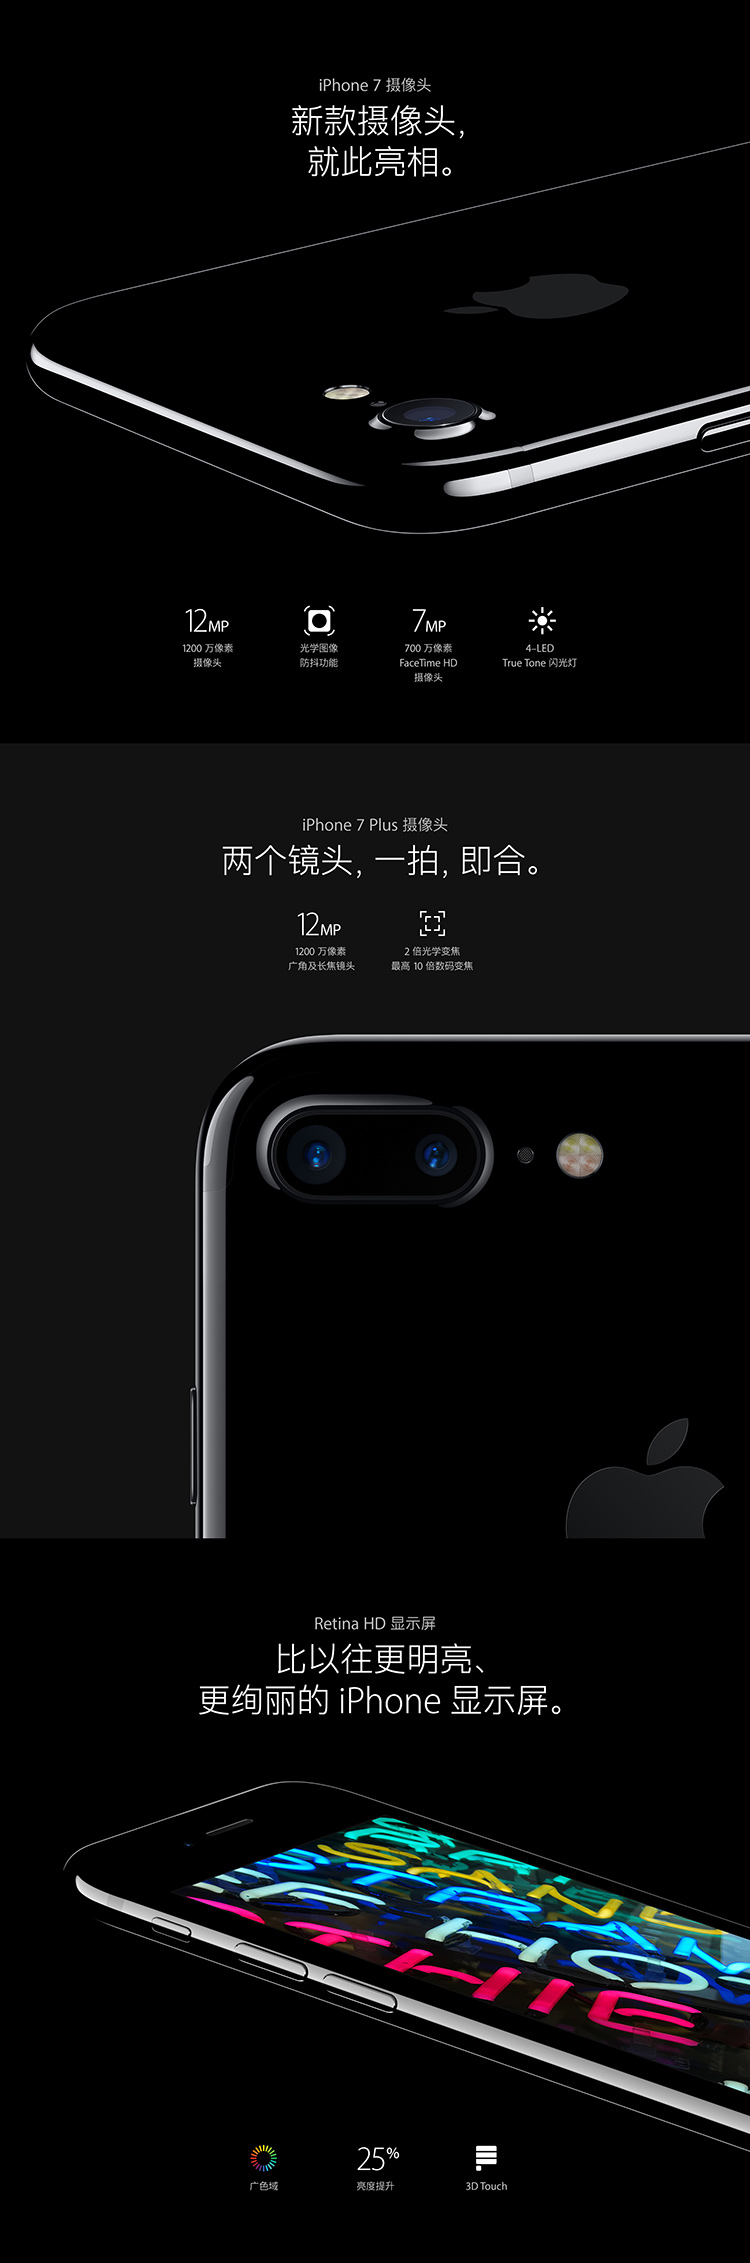 Apple iPhone7 Plus 128GB 金色 移动联通电信4G手机